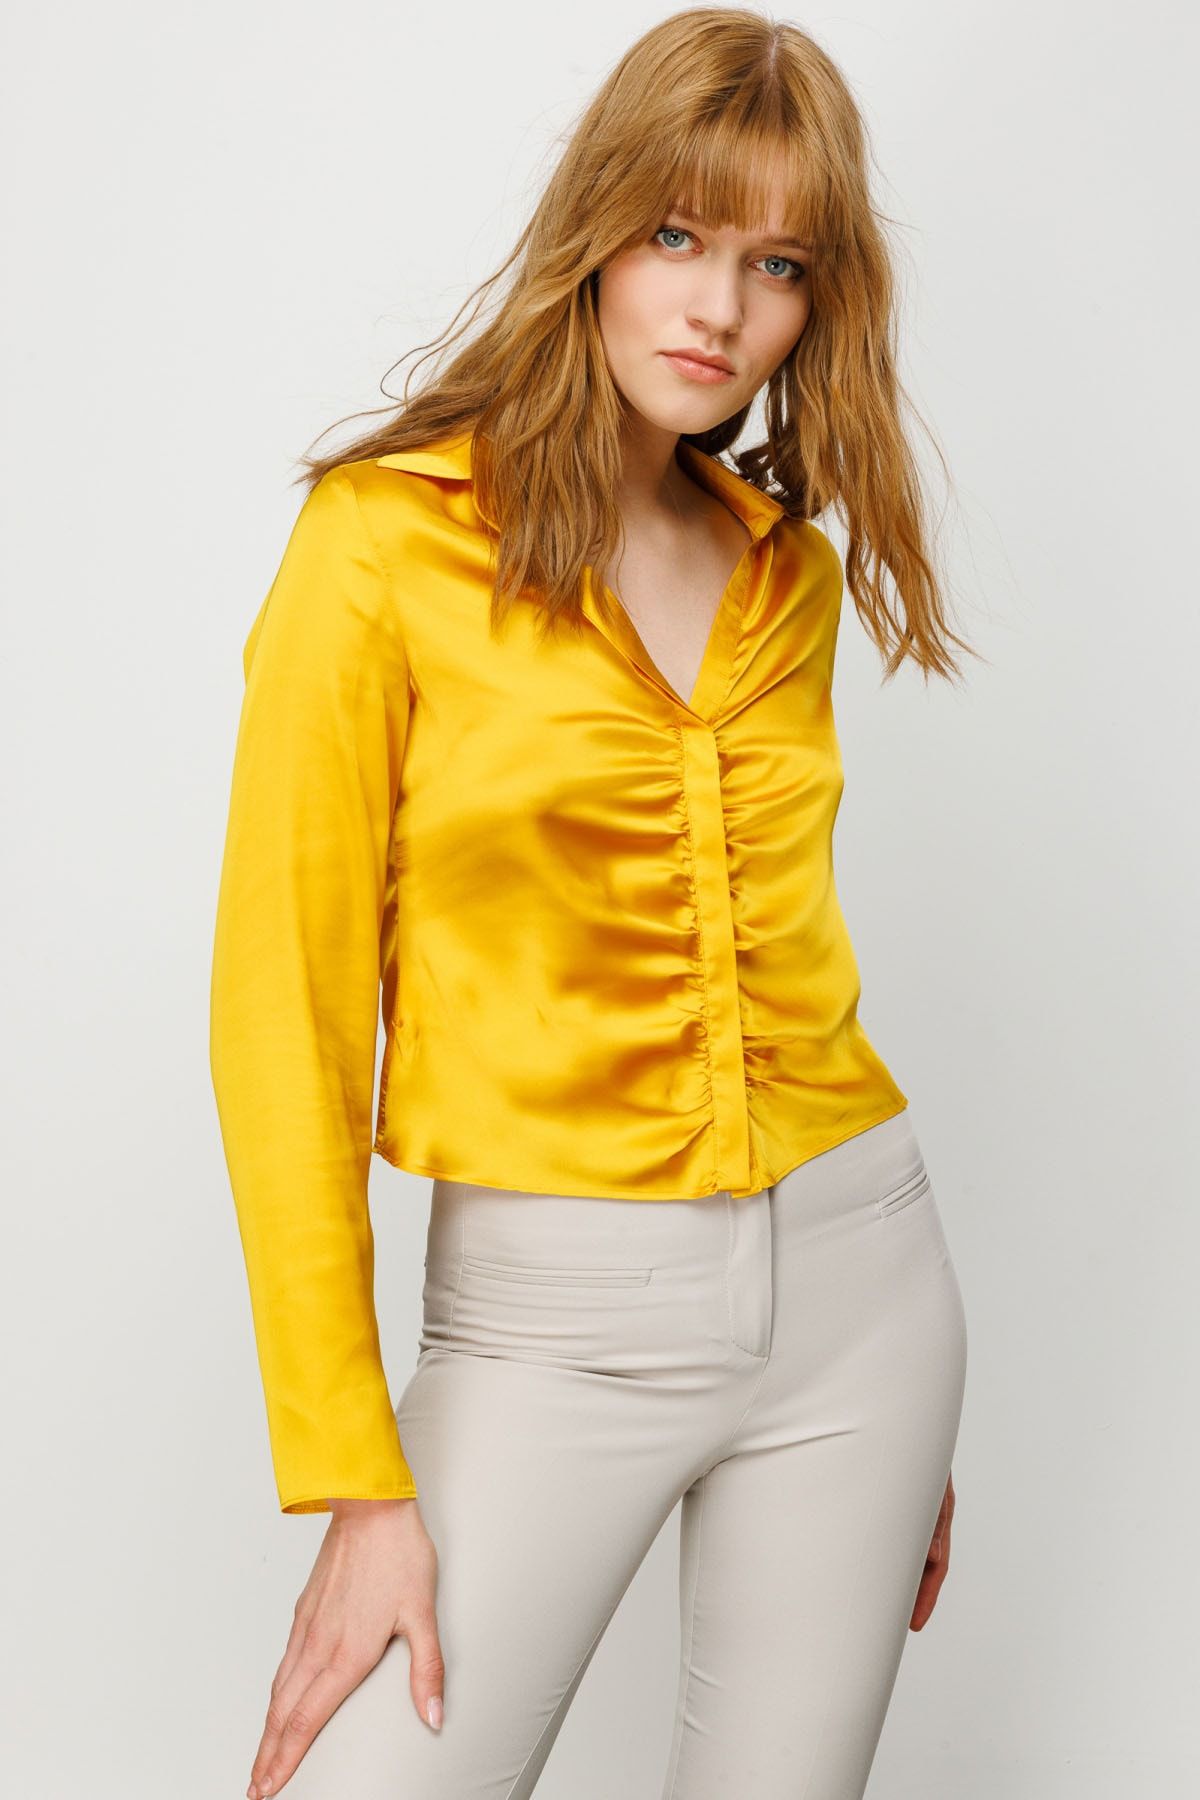 Ekol Kadın Önü Büzgülü Kısa Gömlek 5012 Sarı